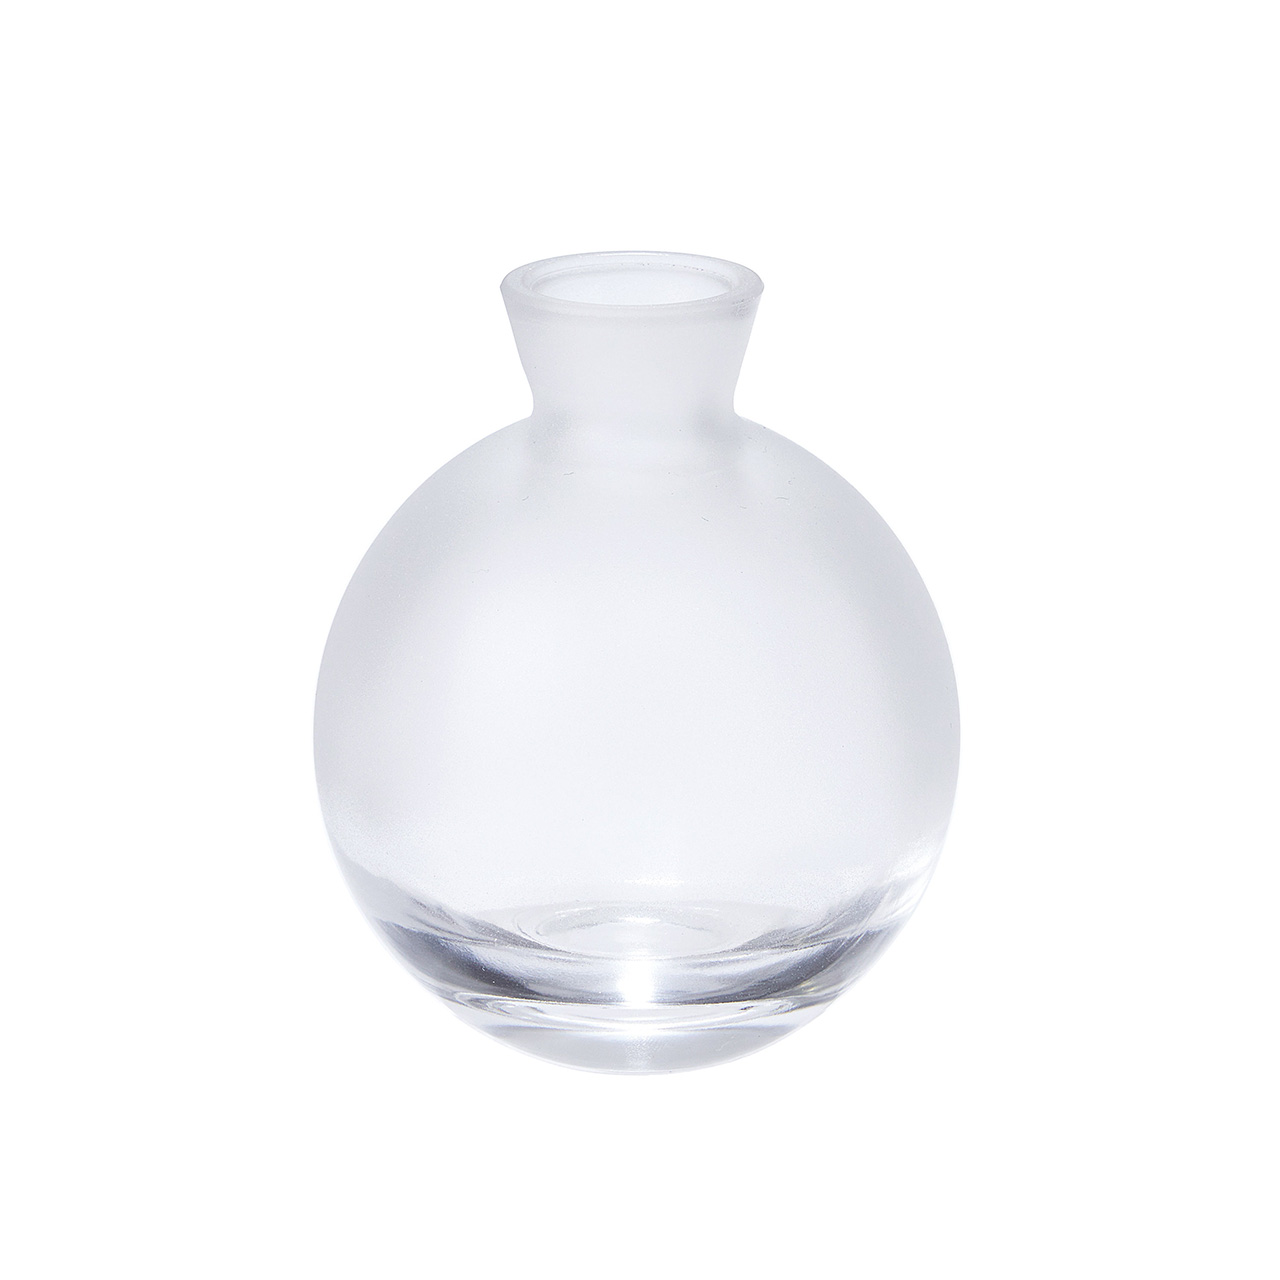 マイフラ】 通販/クレイ ミスト9 花瓶 花器 ガラス 一輪挿し GG000605(直径 約7.5×高さ 約9cm):  花器・花瓶・フレーム・天然素材ベース/全国にMAGIQ、花器、花資材などをお届けします。